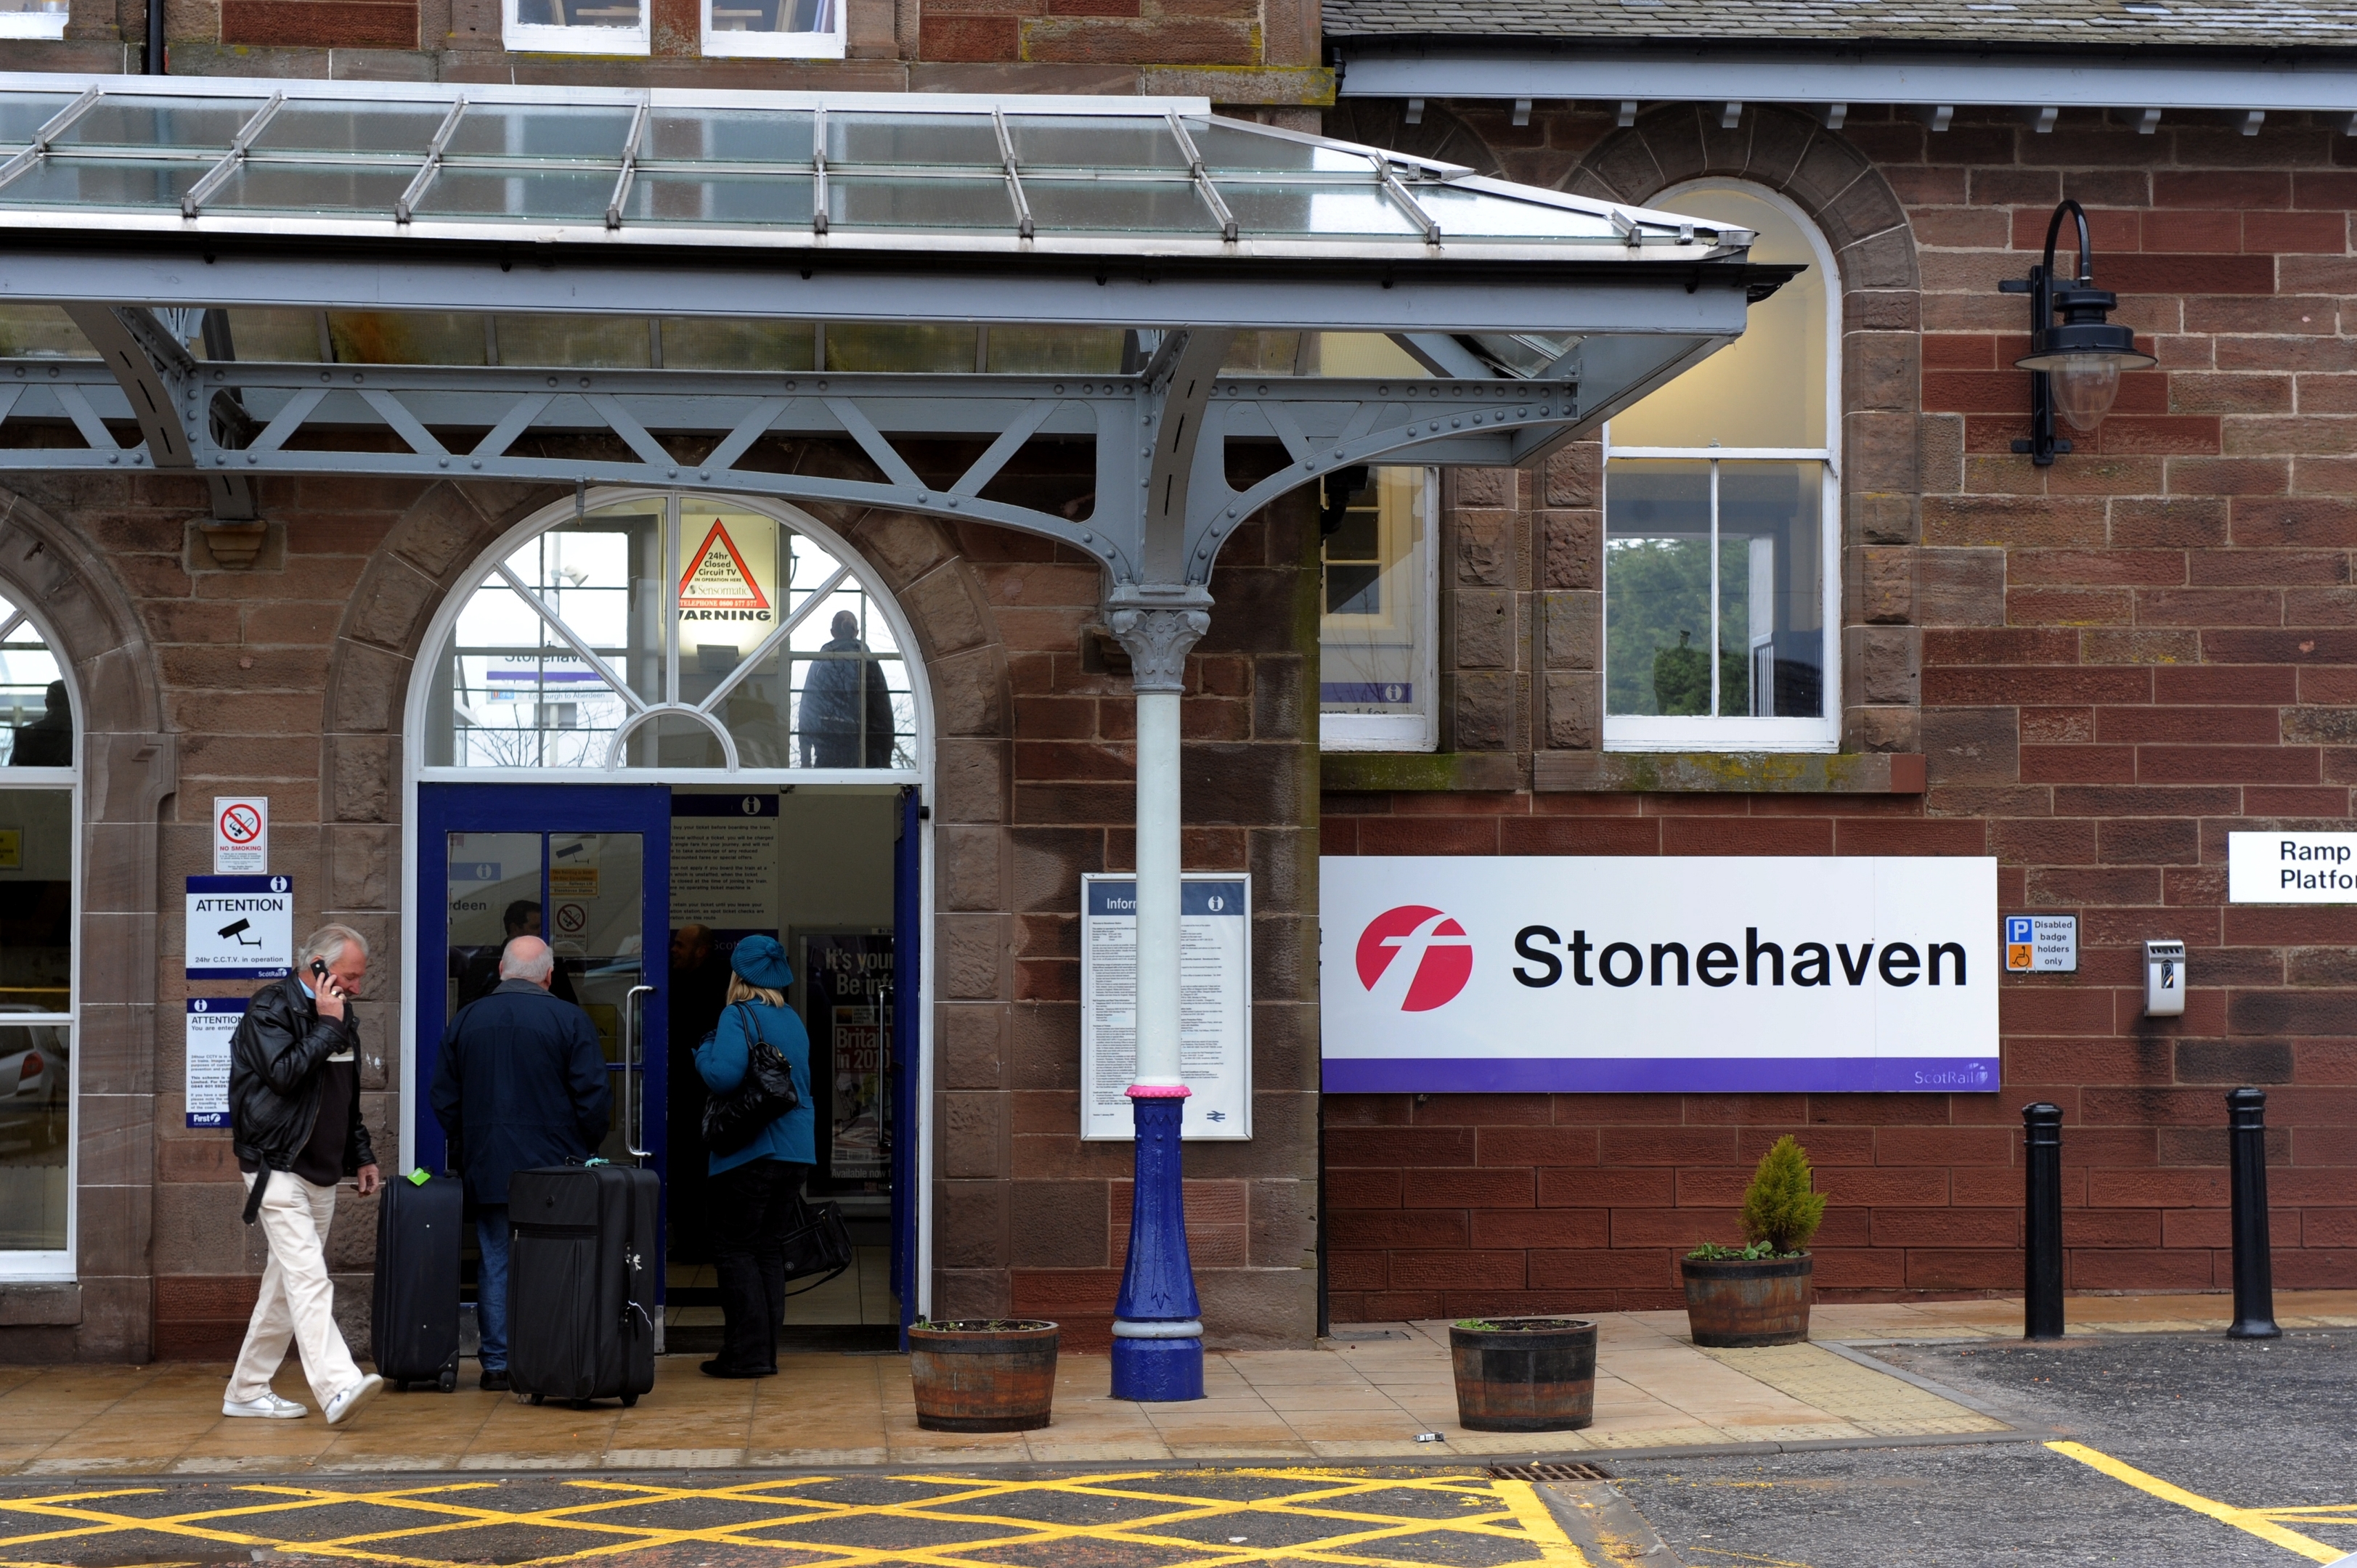 Stonehaven train station